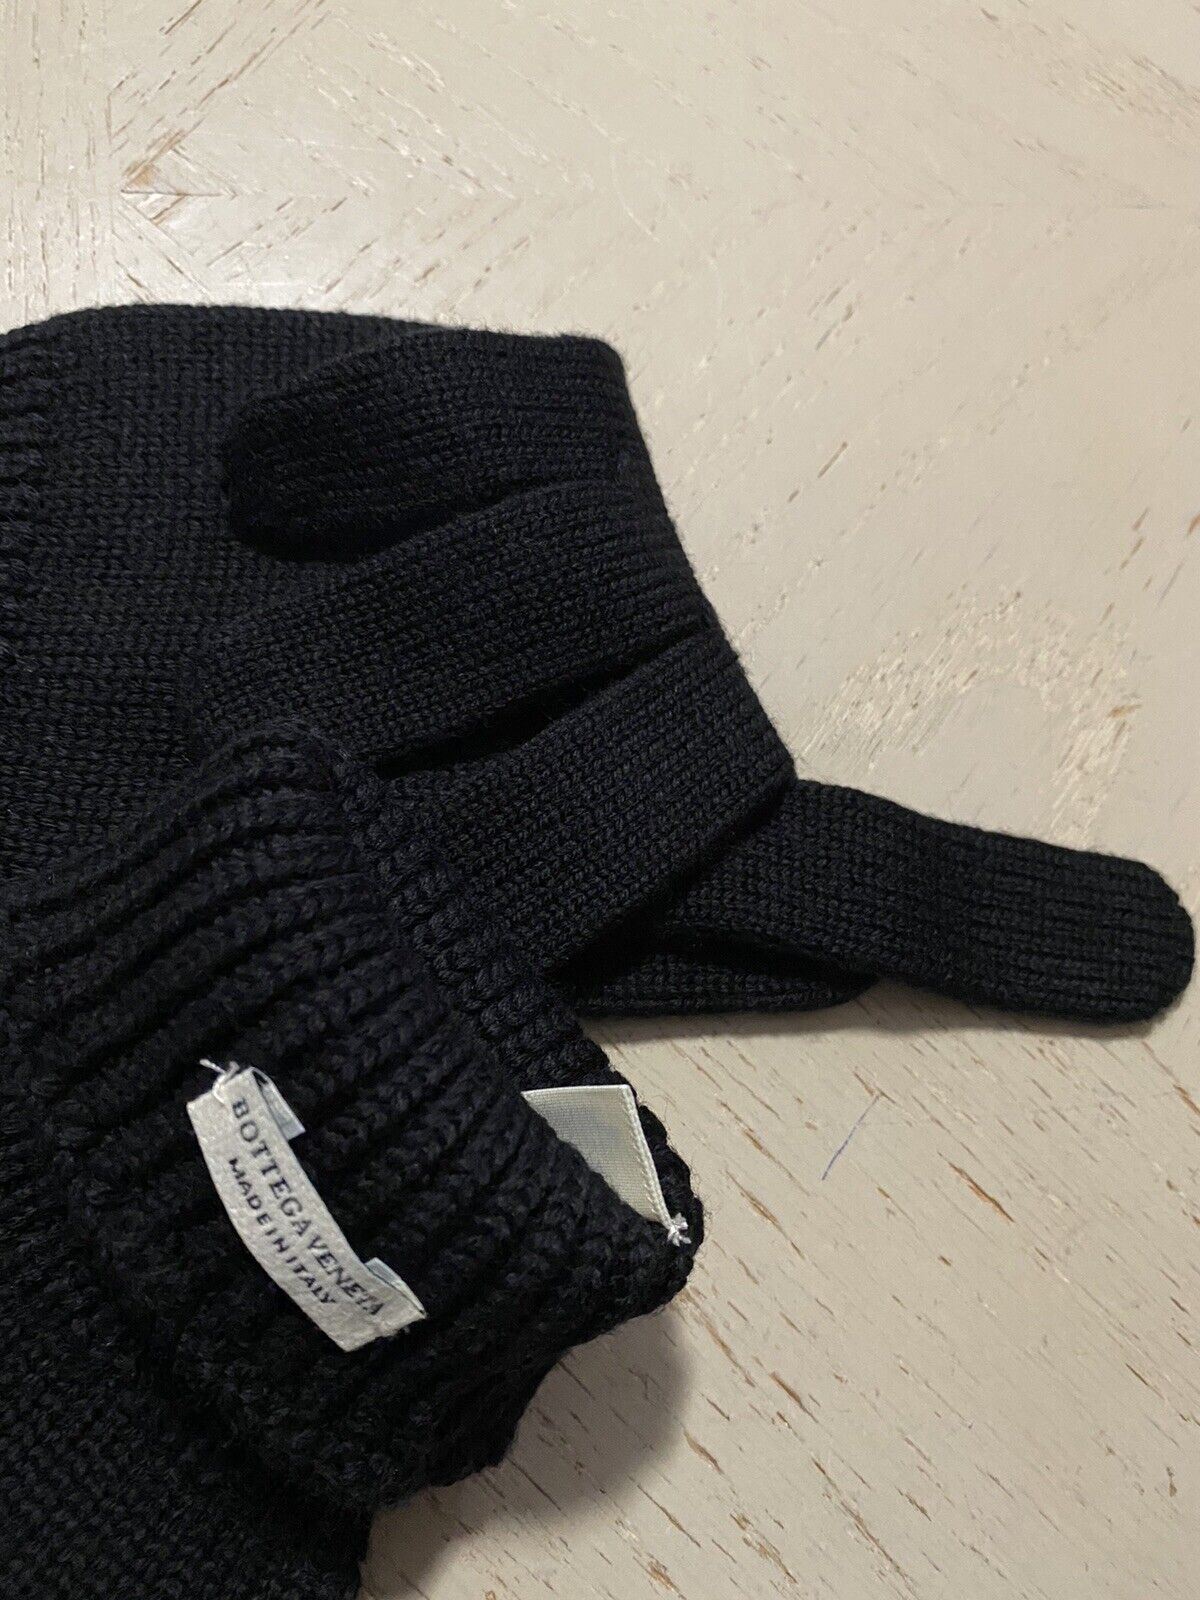 NWT Шерстяные перчатки Bottega Veneta, черные, размер L, Италия